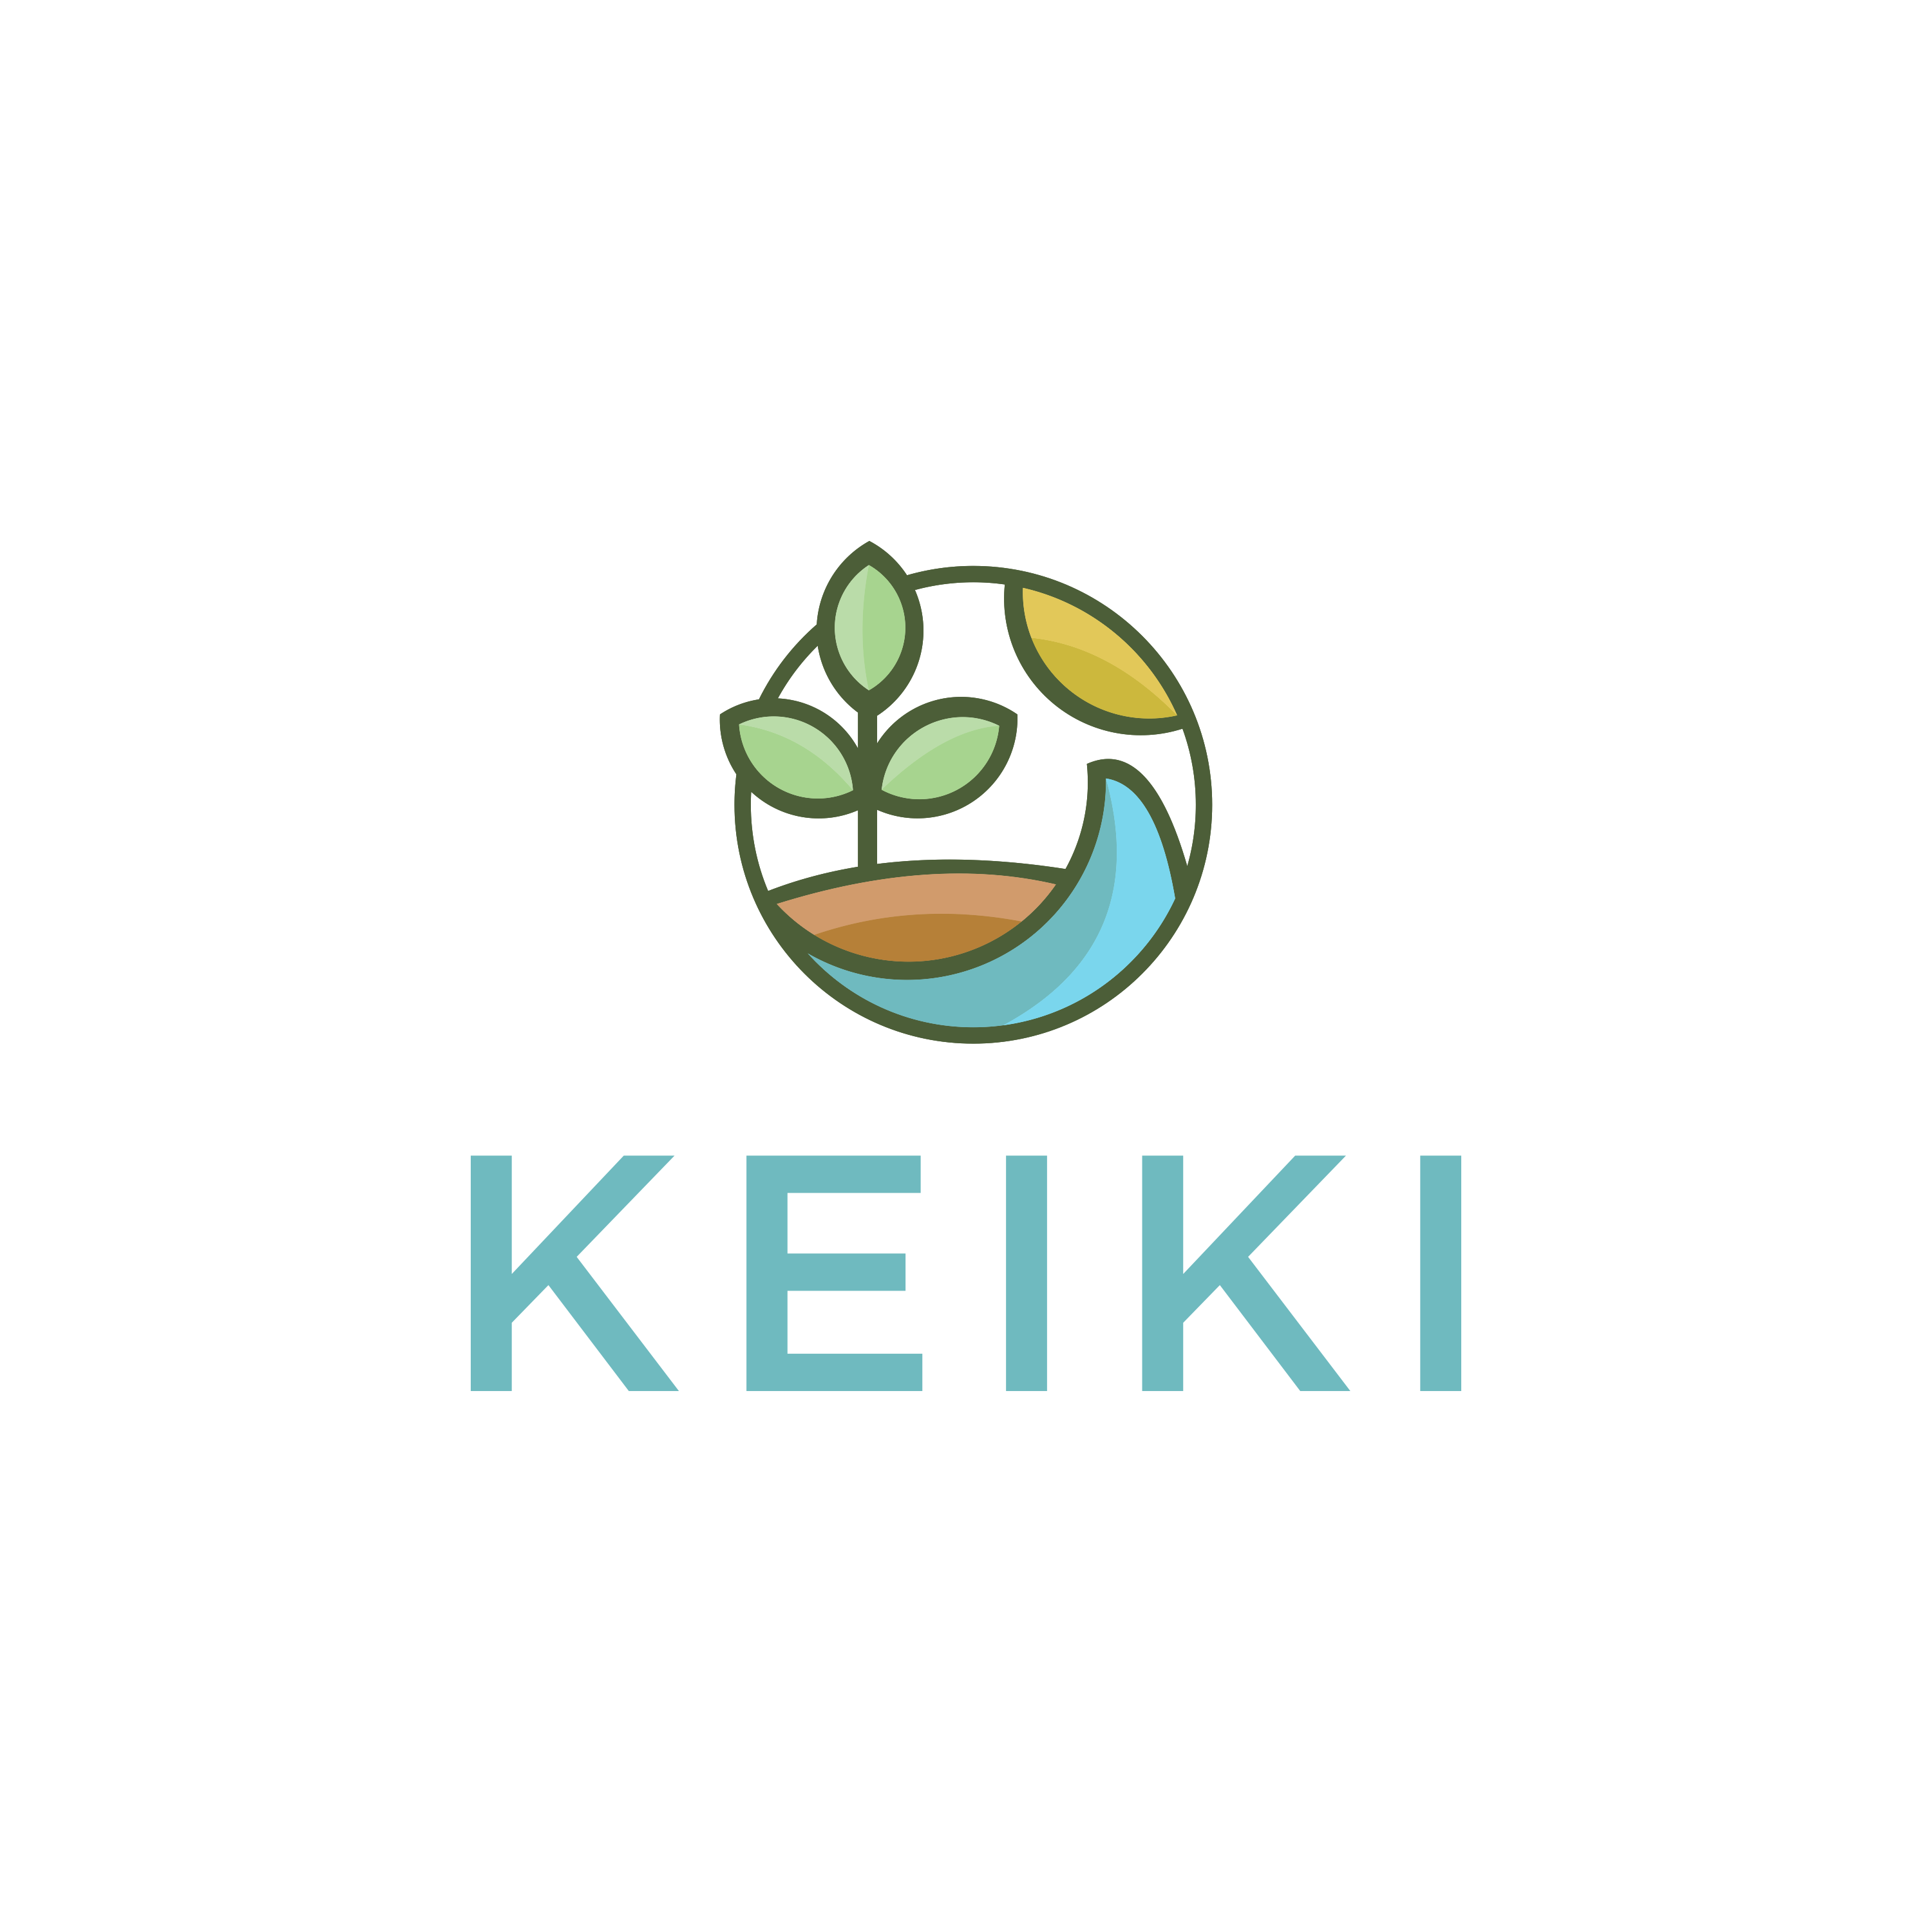 Keiki Capital logo